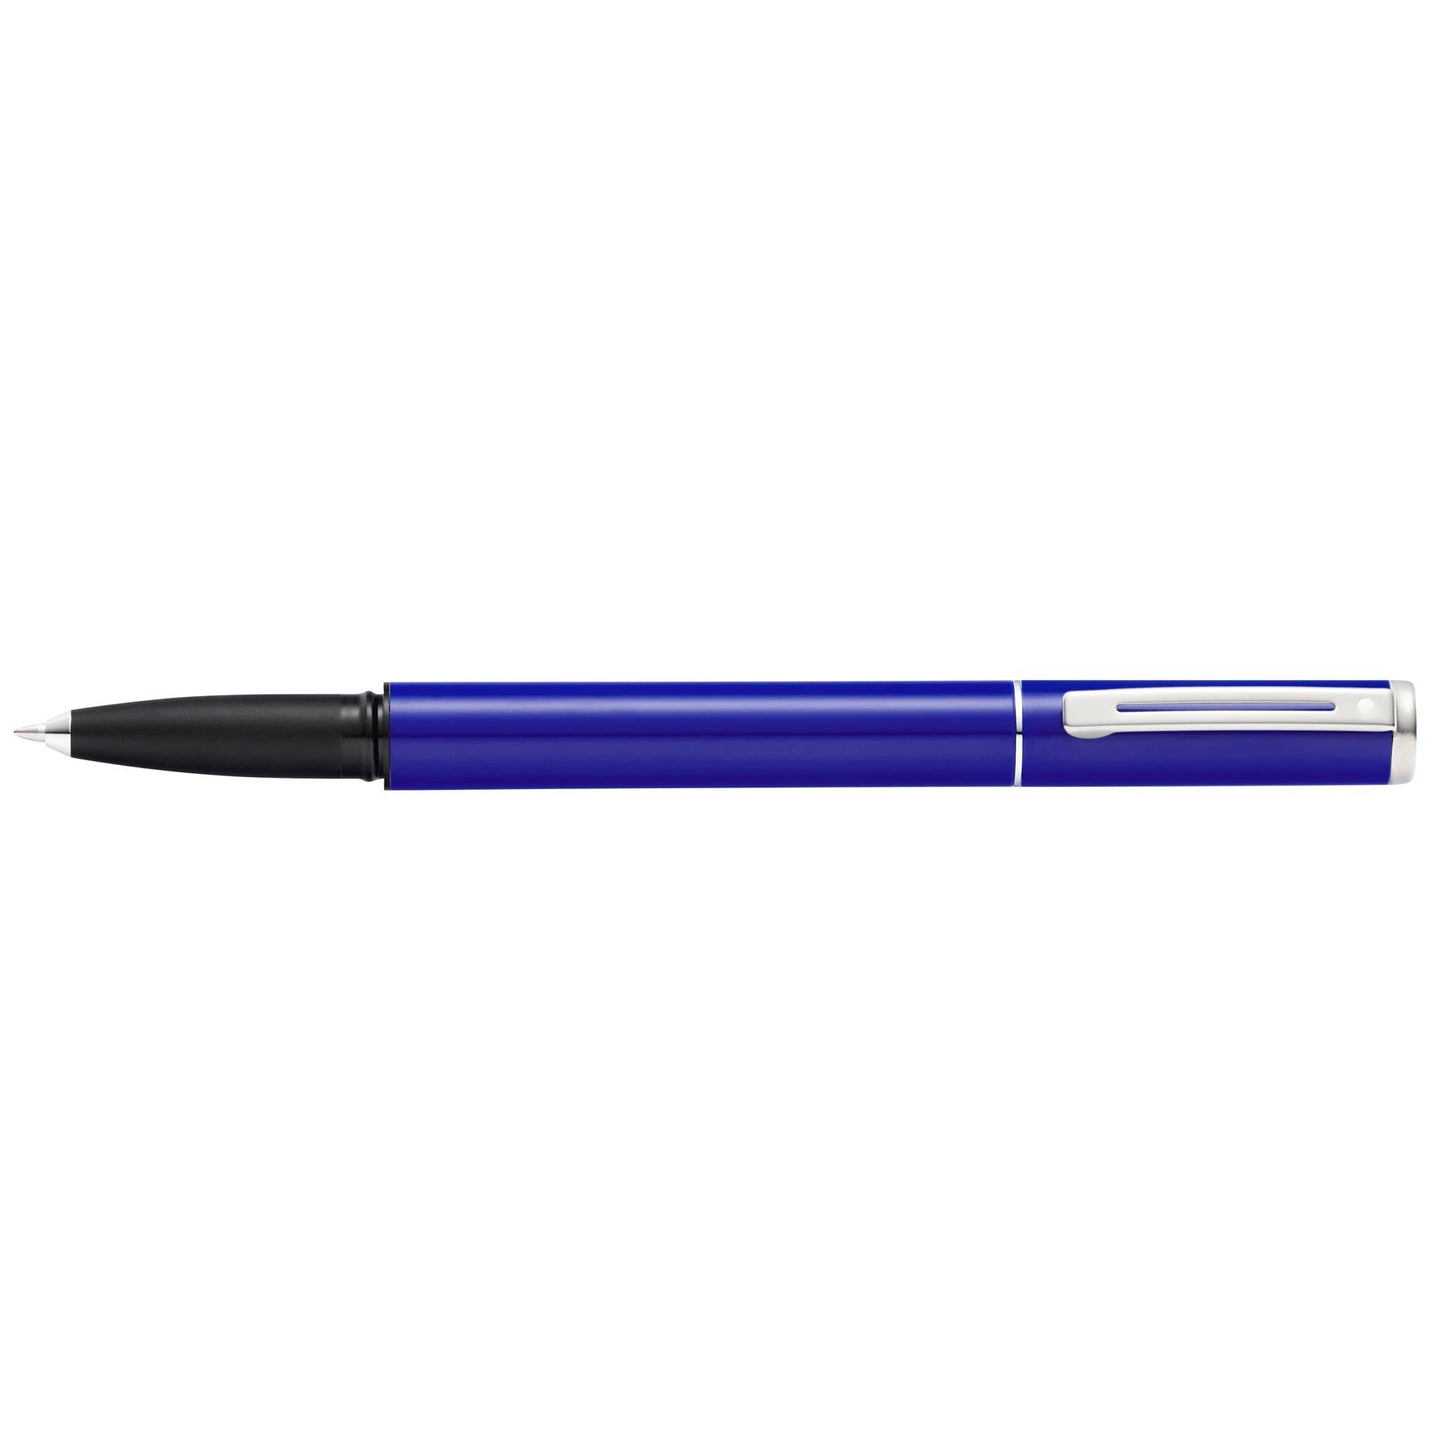 Sheaffer E1920151 Pop Blue Rollerball Pen Medium Tip with Chrome Trim - Black Ink